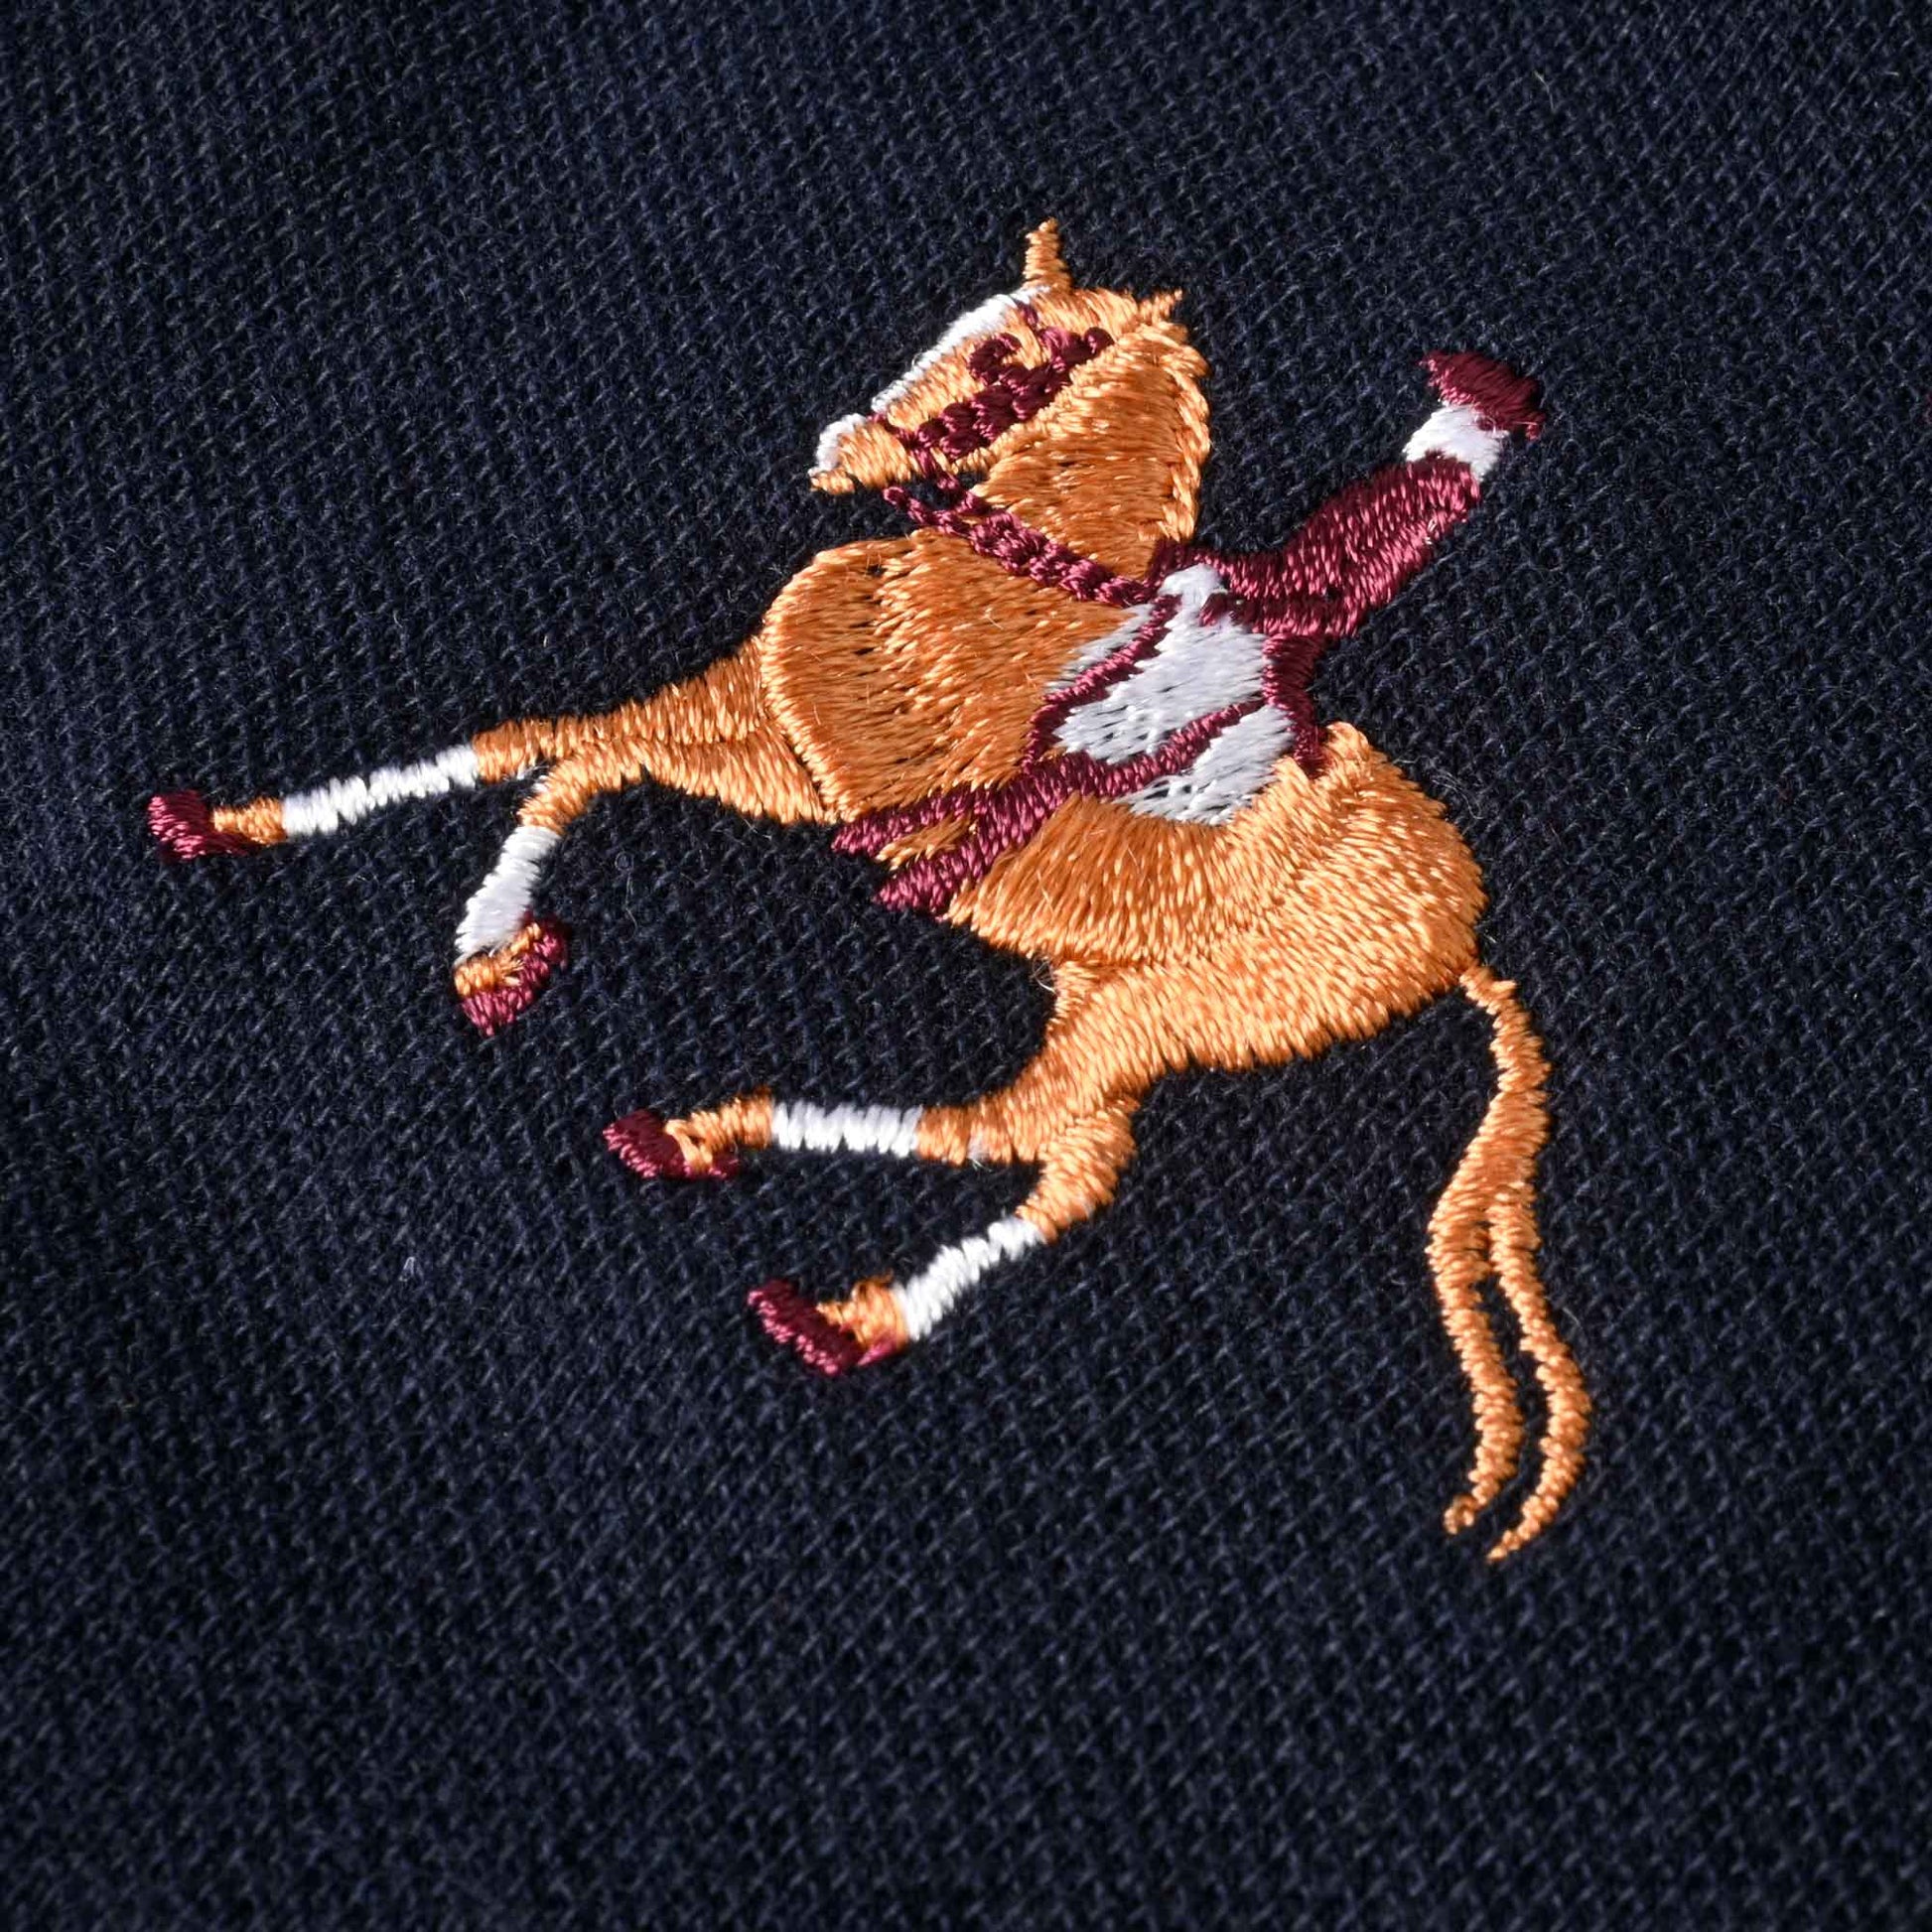 Polo Republica Men's Horse Rider & Emblem Embroidered Short Sleeve Polo Shirt Men's Polo Shirt Polo Republica 